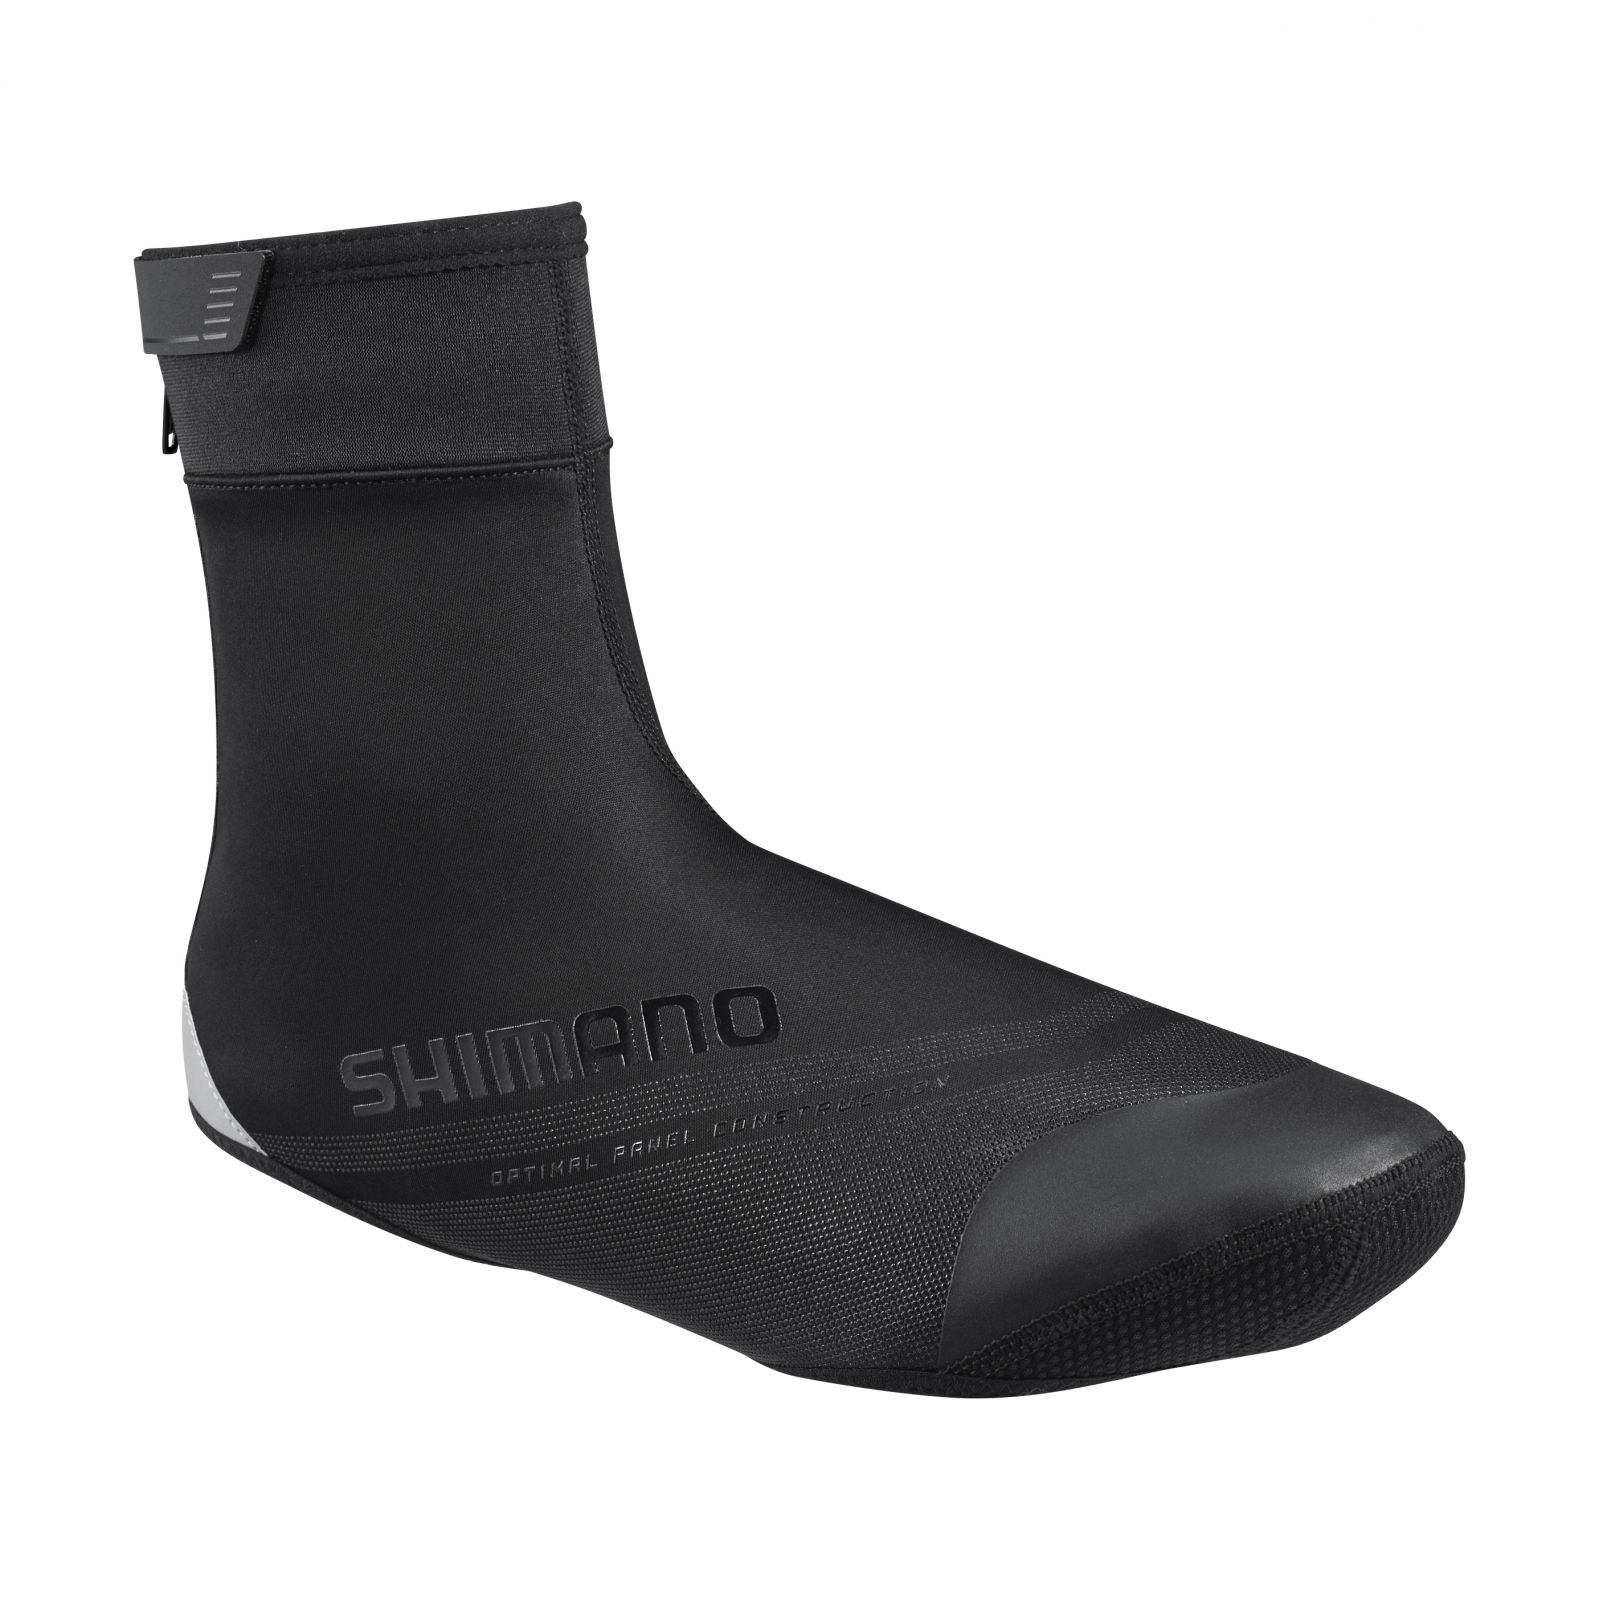 SHIMANO S1100R SOFT SHELL návleky na obuv (5-10°C), černá, L (42-43)